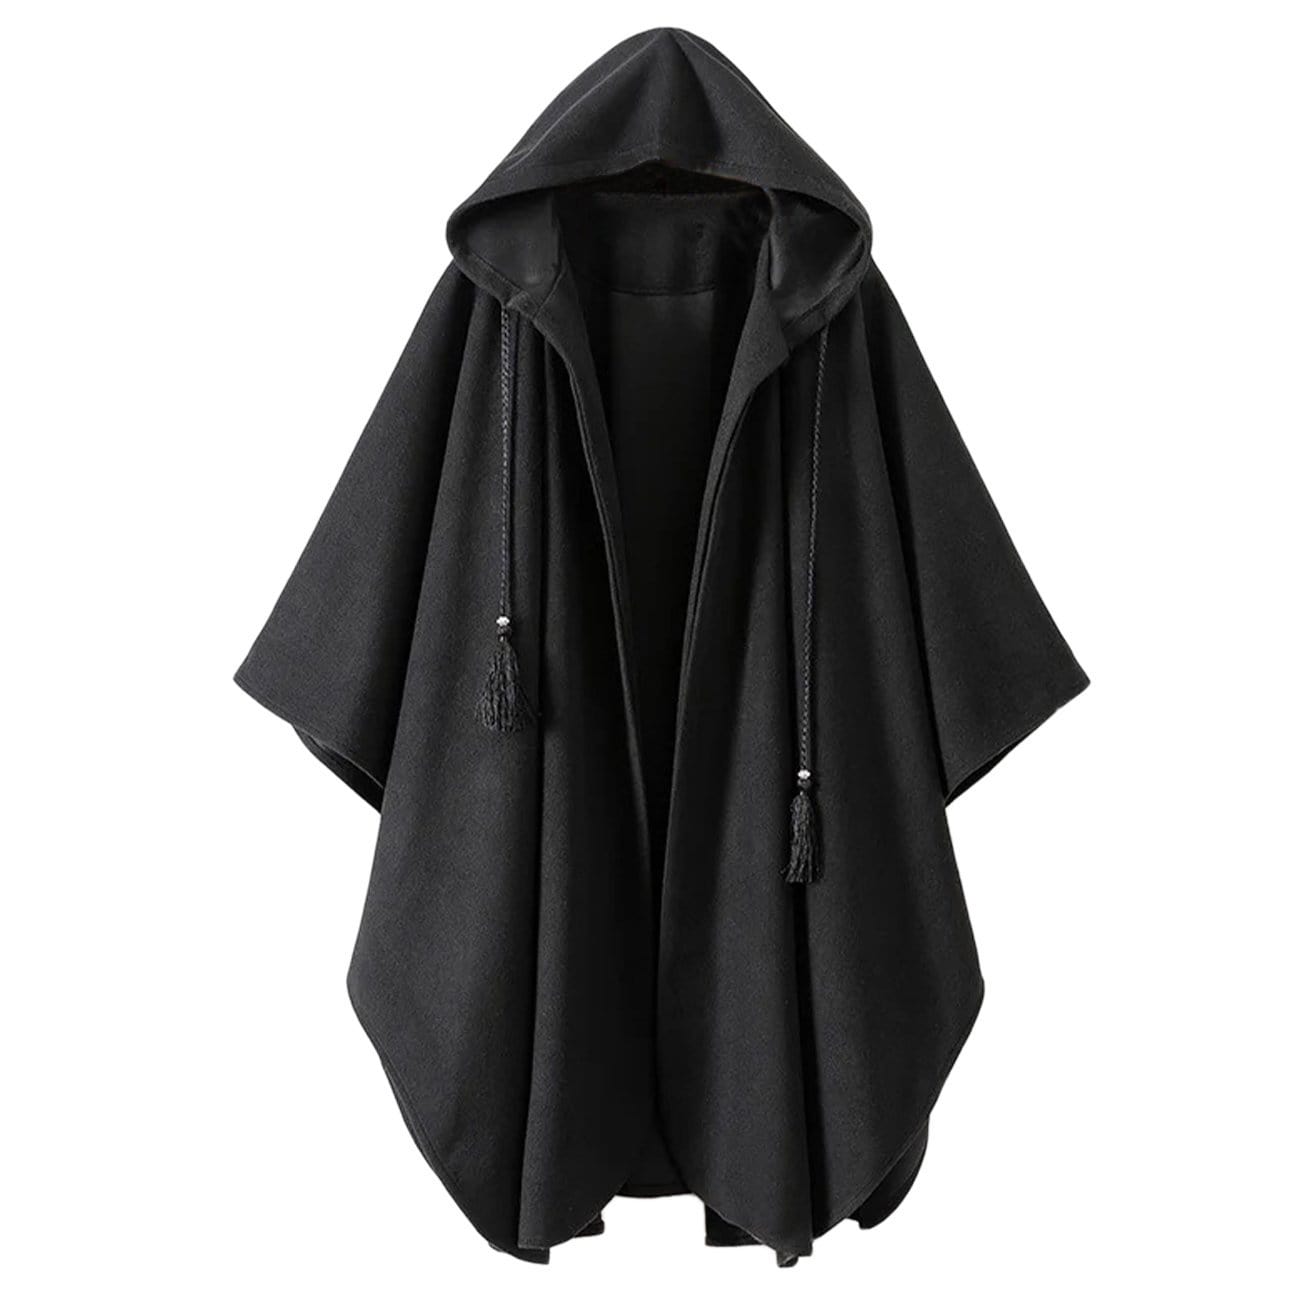 TO Dark Cloak Cape Wizard Coat